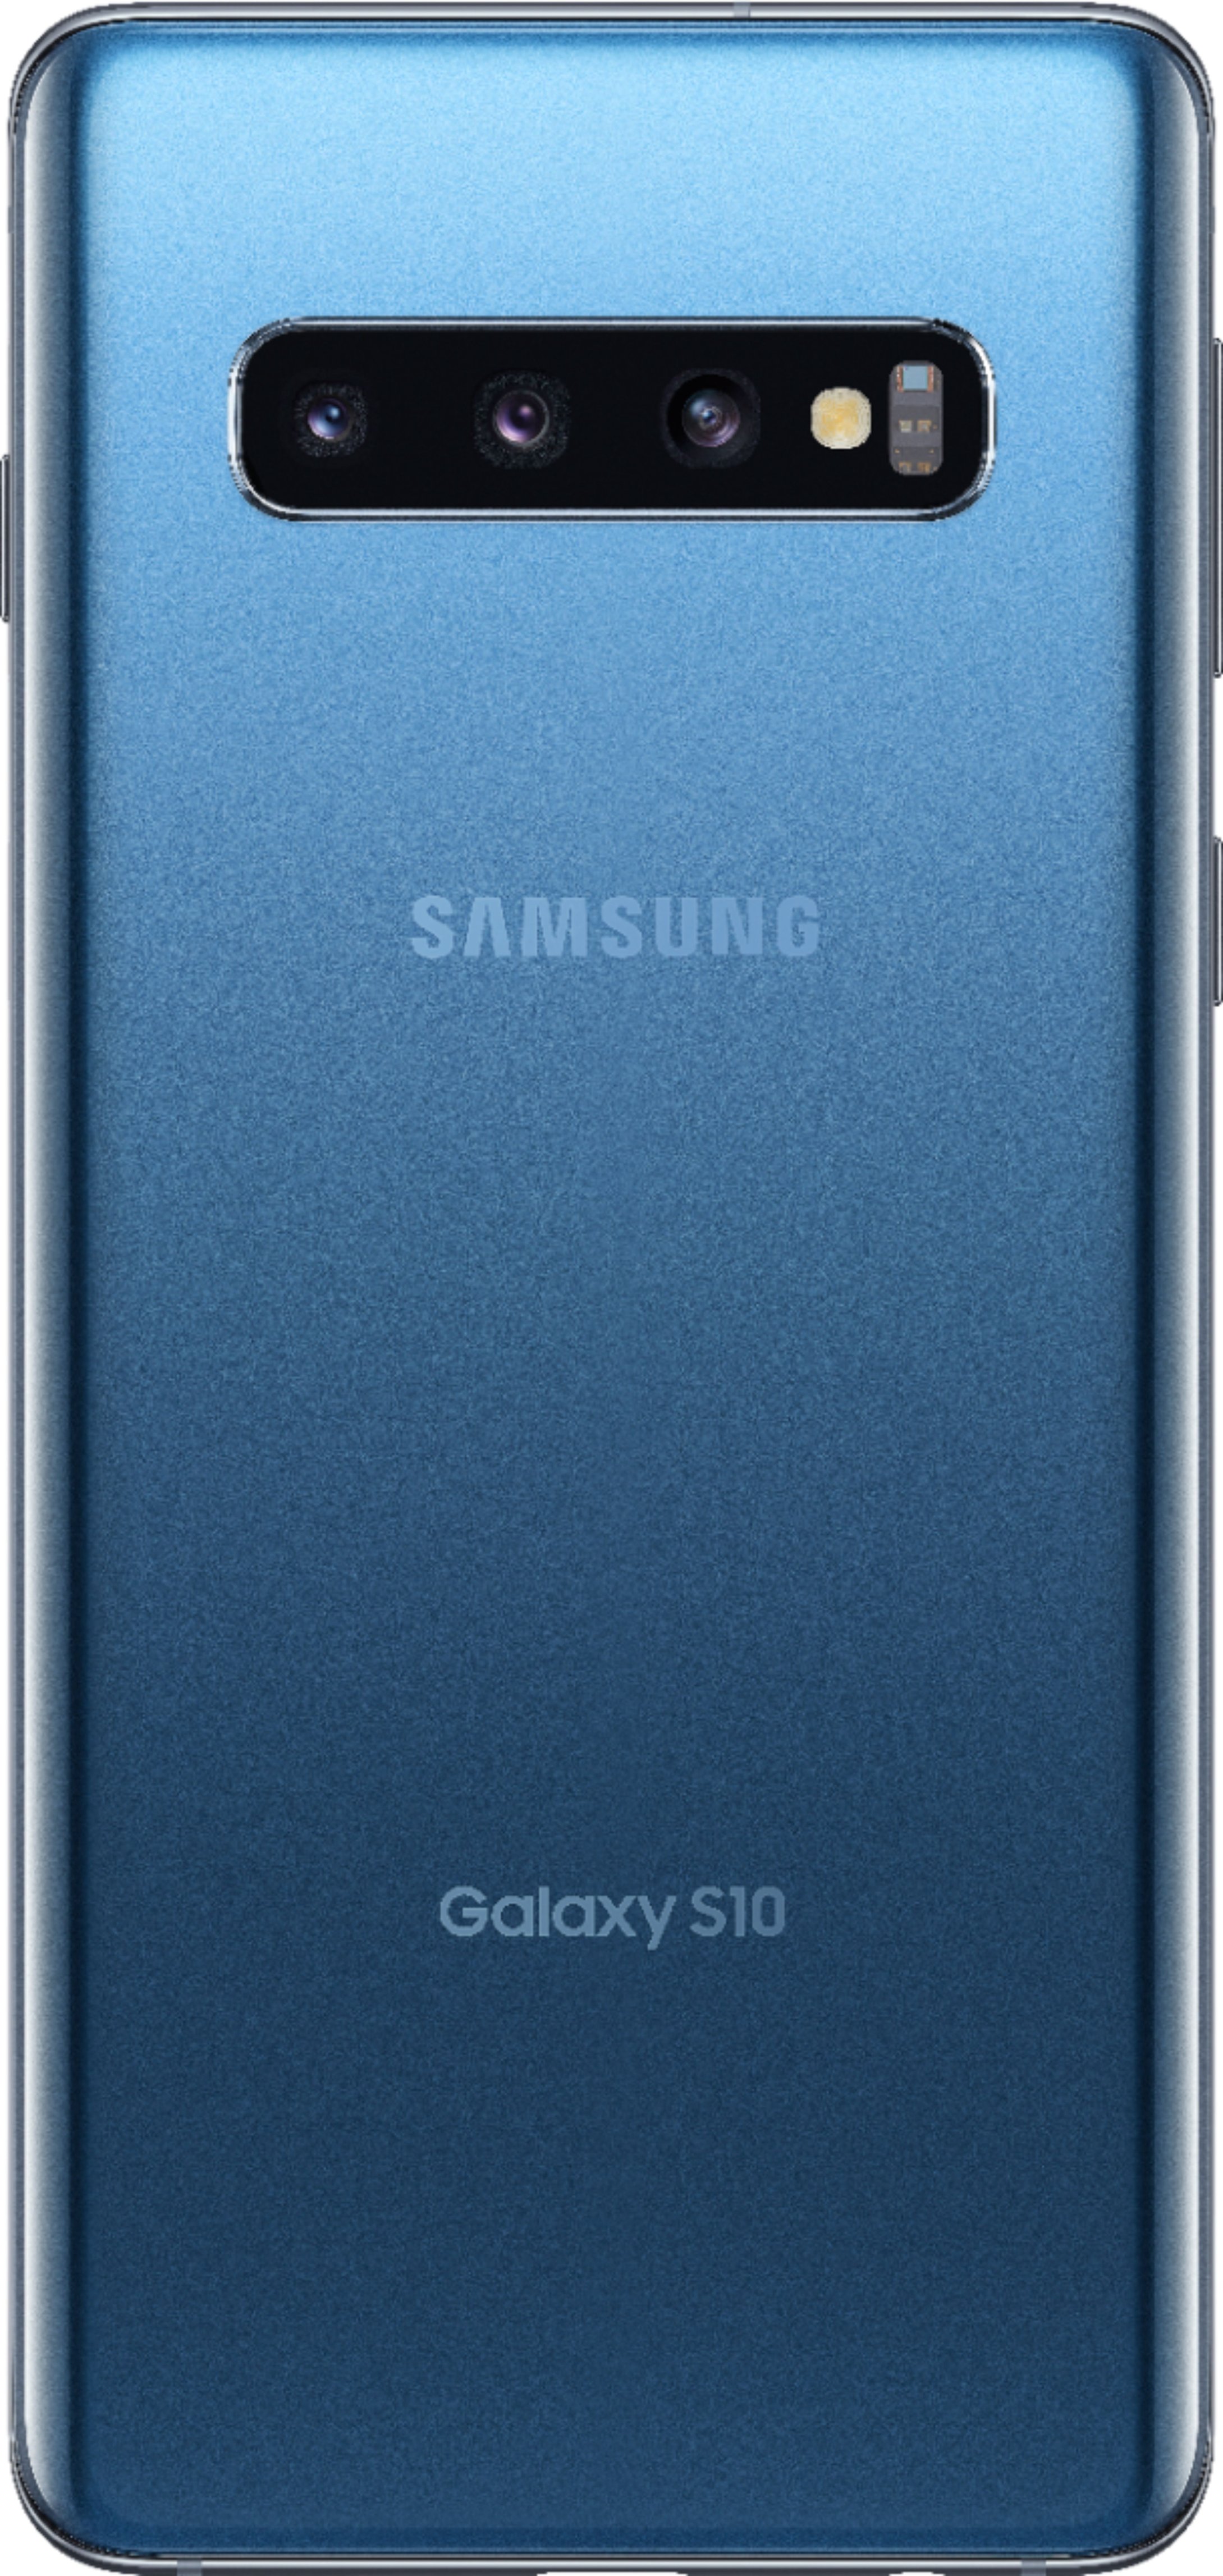 Galaxy S10 Prism Blue 128 GB SIMフリー - スマートフォン本体